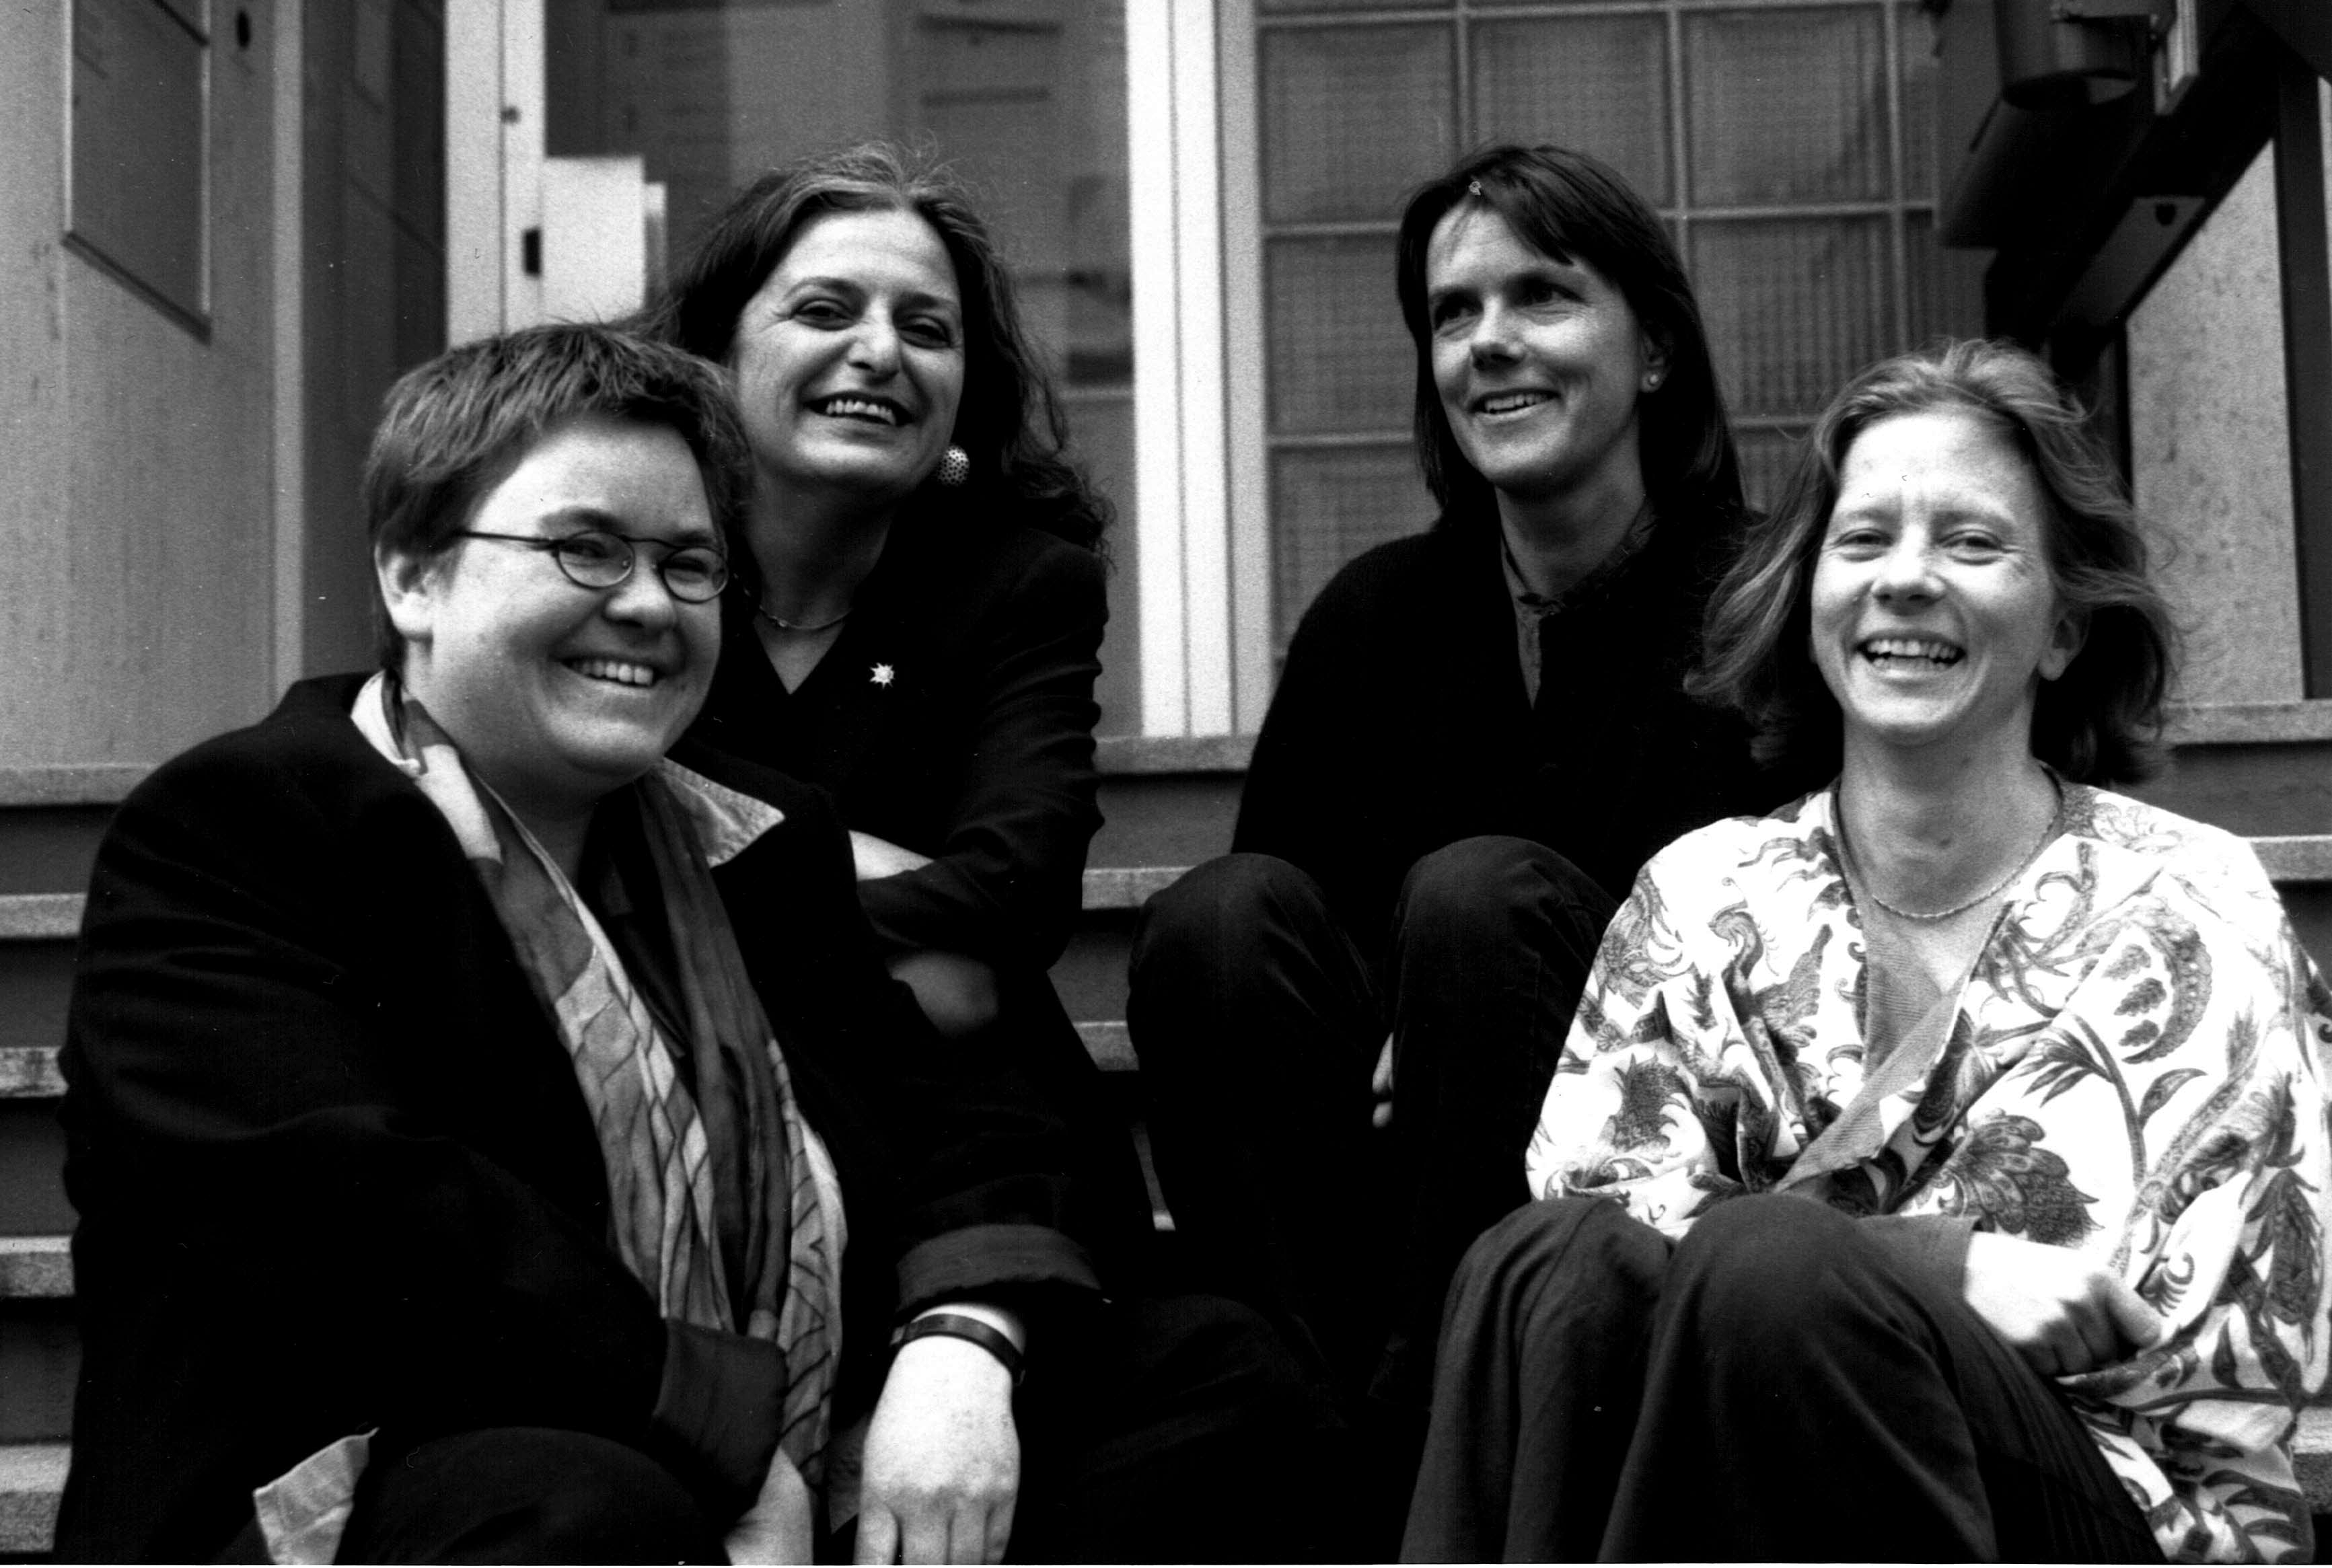 Damalige Abteilung für Gleichstellung von Frau und Mann. Von links nach rechts: Doris Nienhaus, Barbara Lischetti (h.l.), Eva Lehner und Christine Michel. © AfC